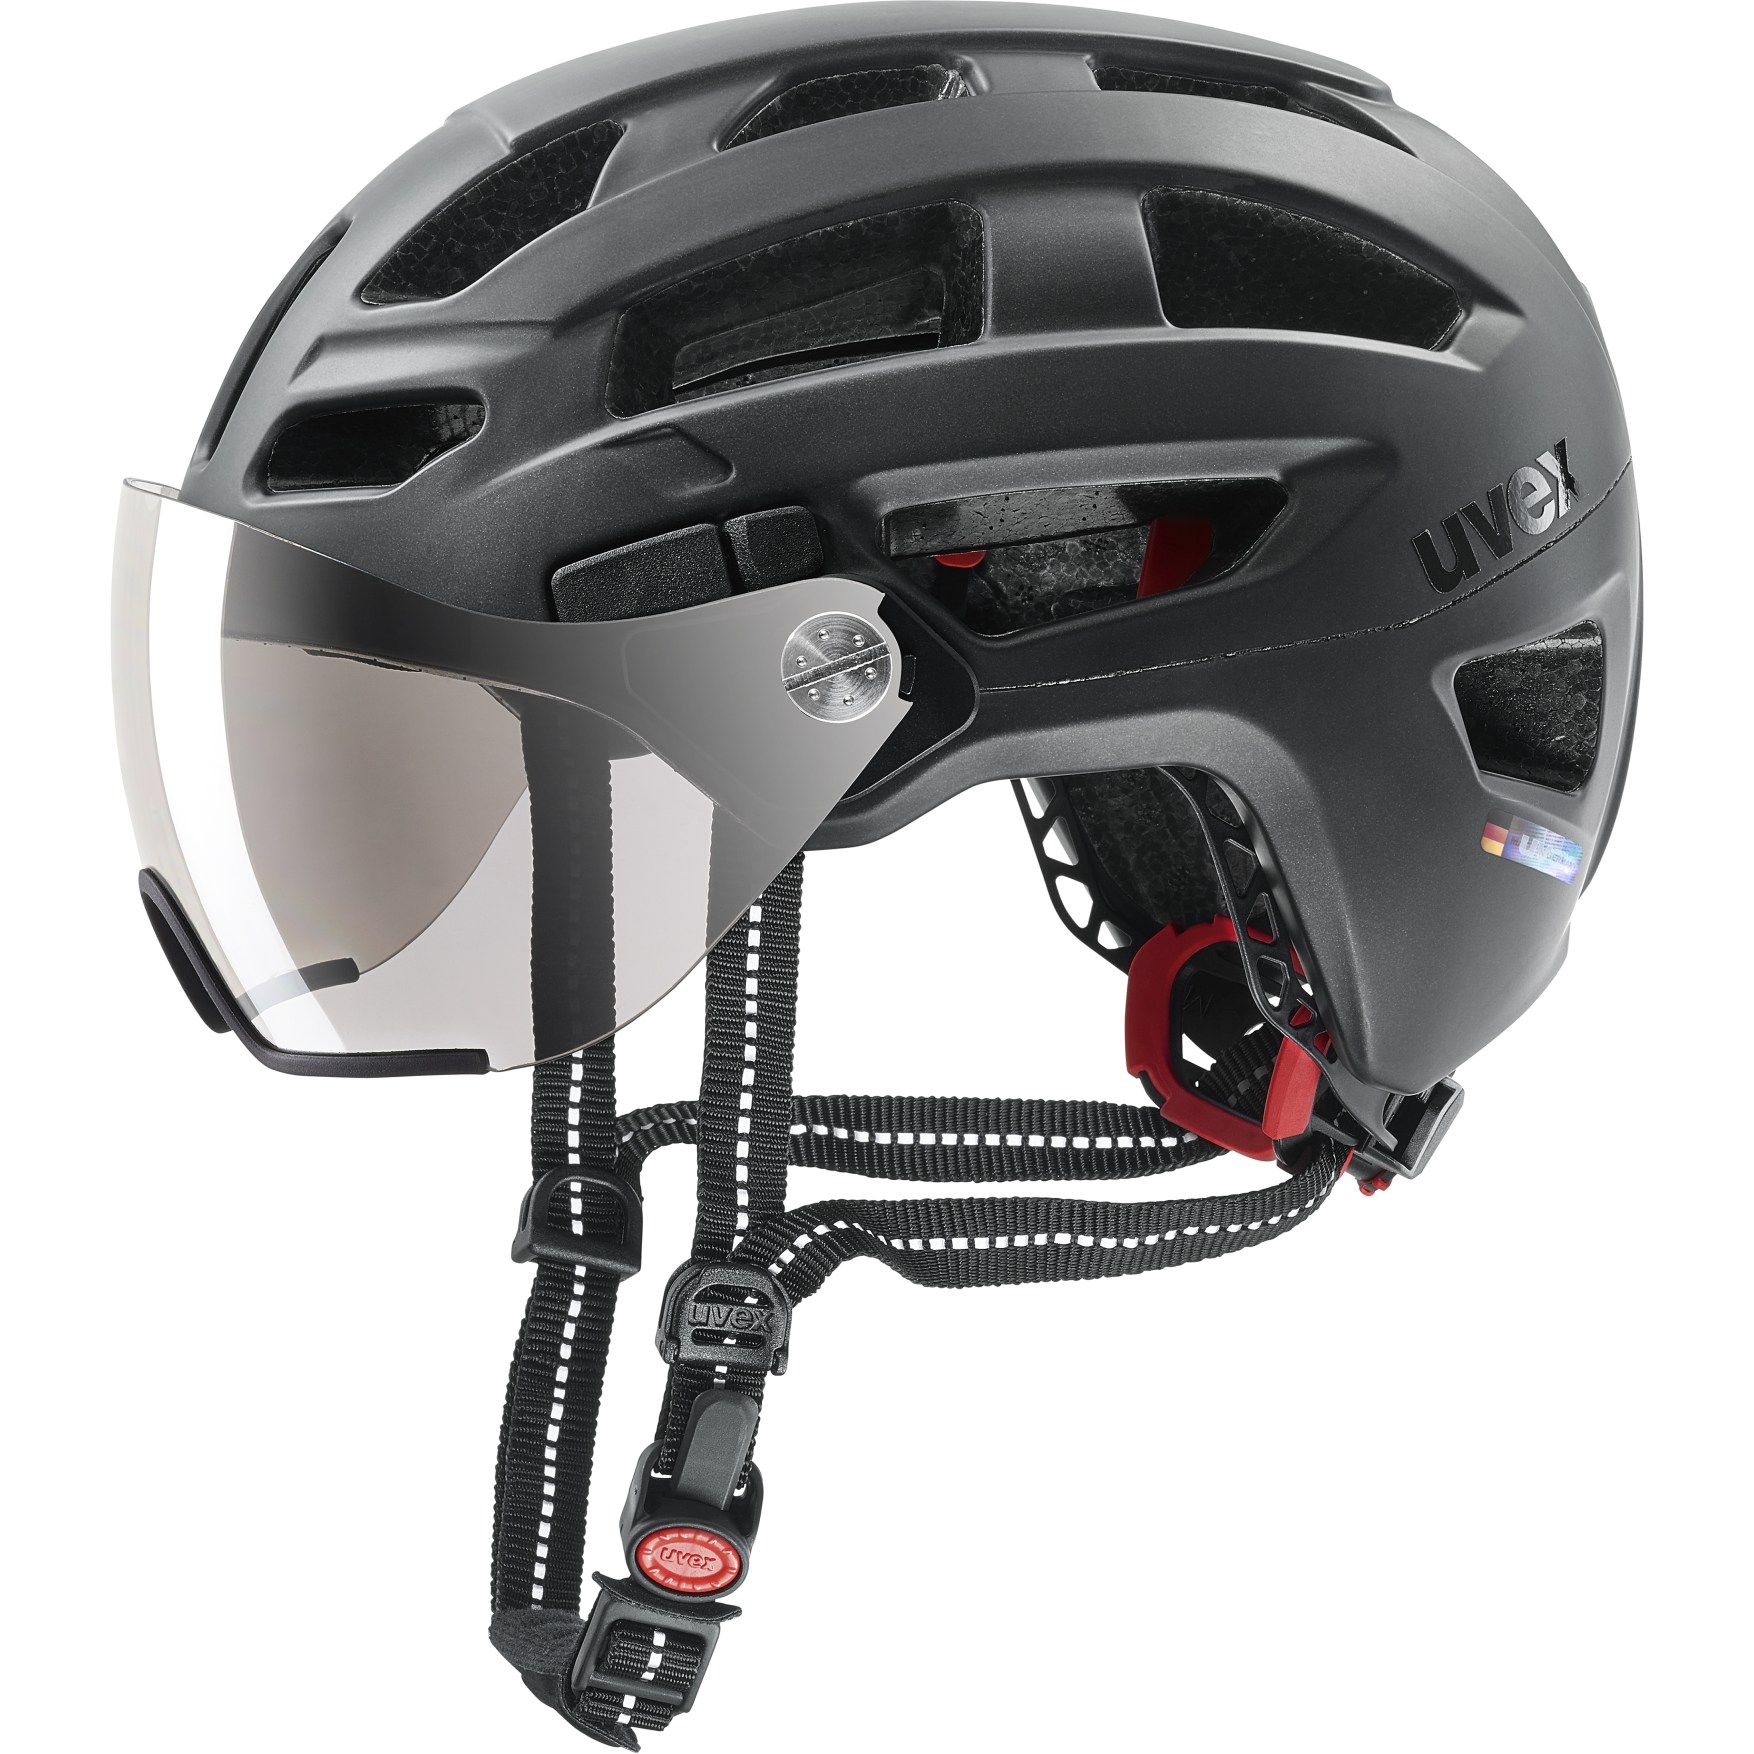 Produktbild von Uvex finale visor Helm - schwarz matt